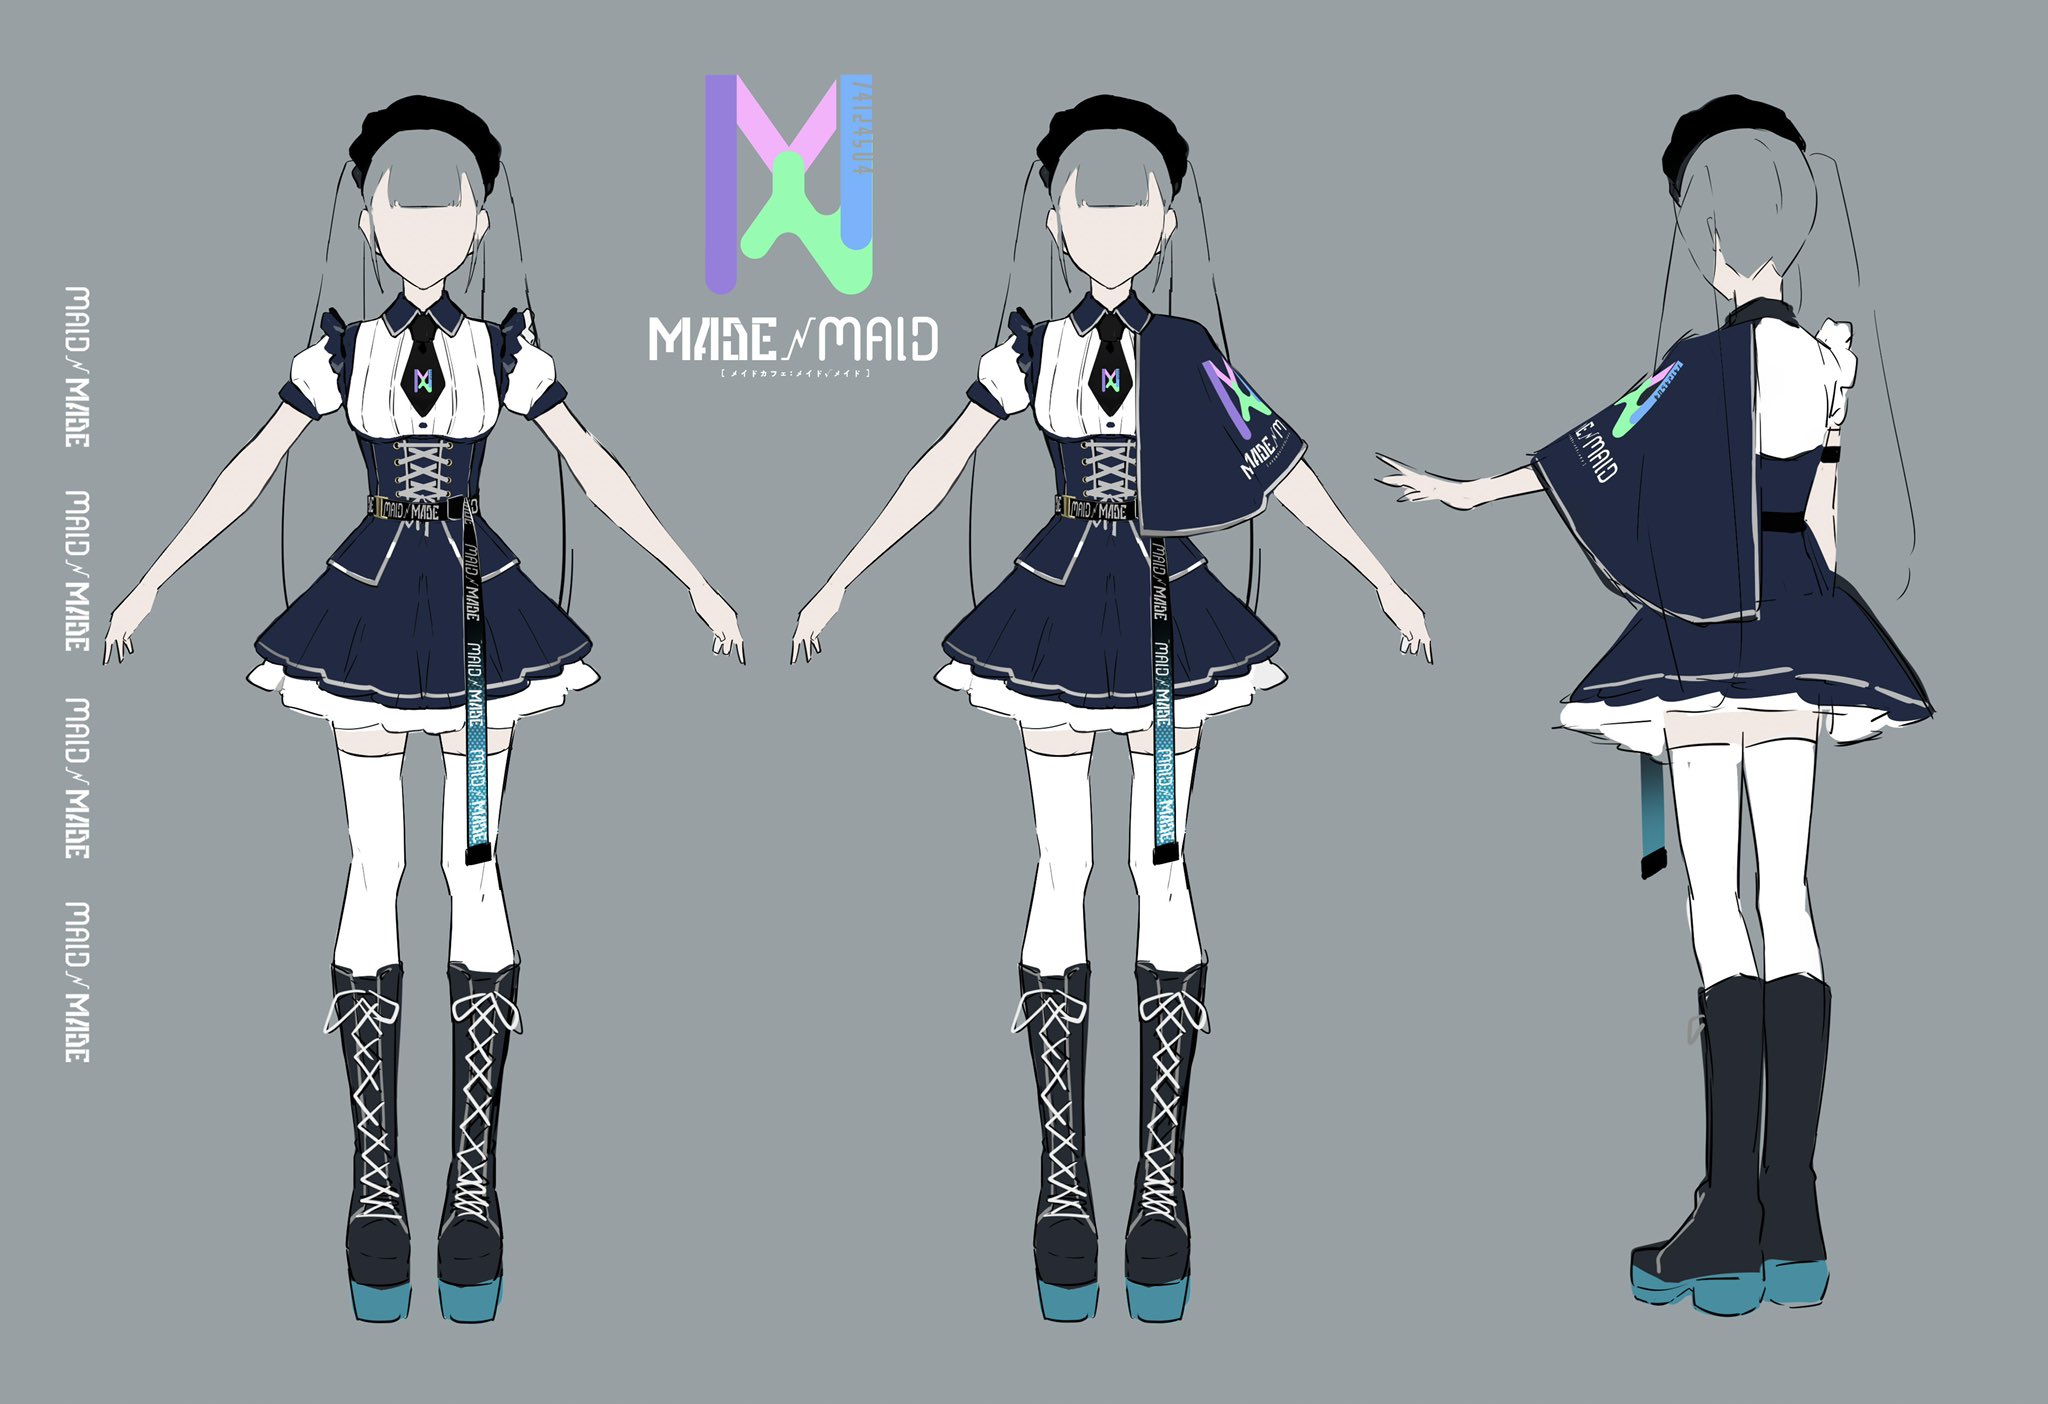 メイドカフェ Maid Made メイドメイド 名古屋大須商店街 制服イメージ公開 Maid Madeの制服はこんな感じになります フォロワー30万人オーバーの某有名イラストレーターさんにデザインしていただきました 実物のお披露目は5月中にできたら